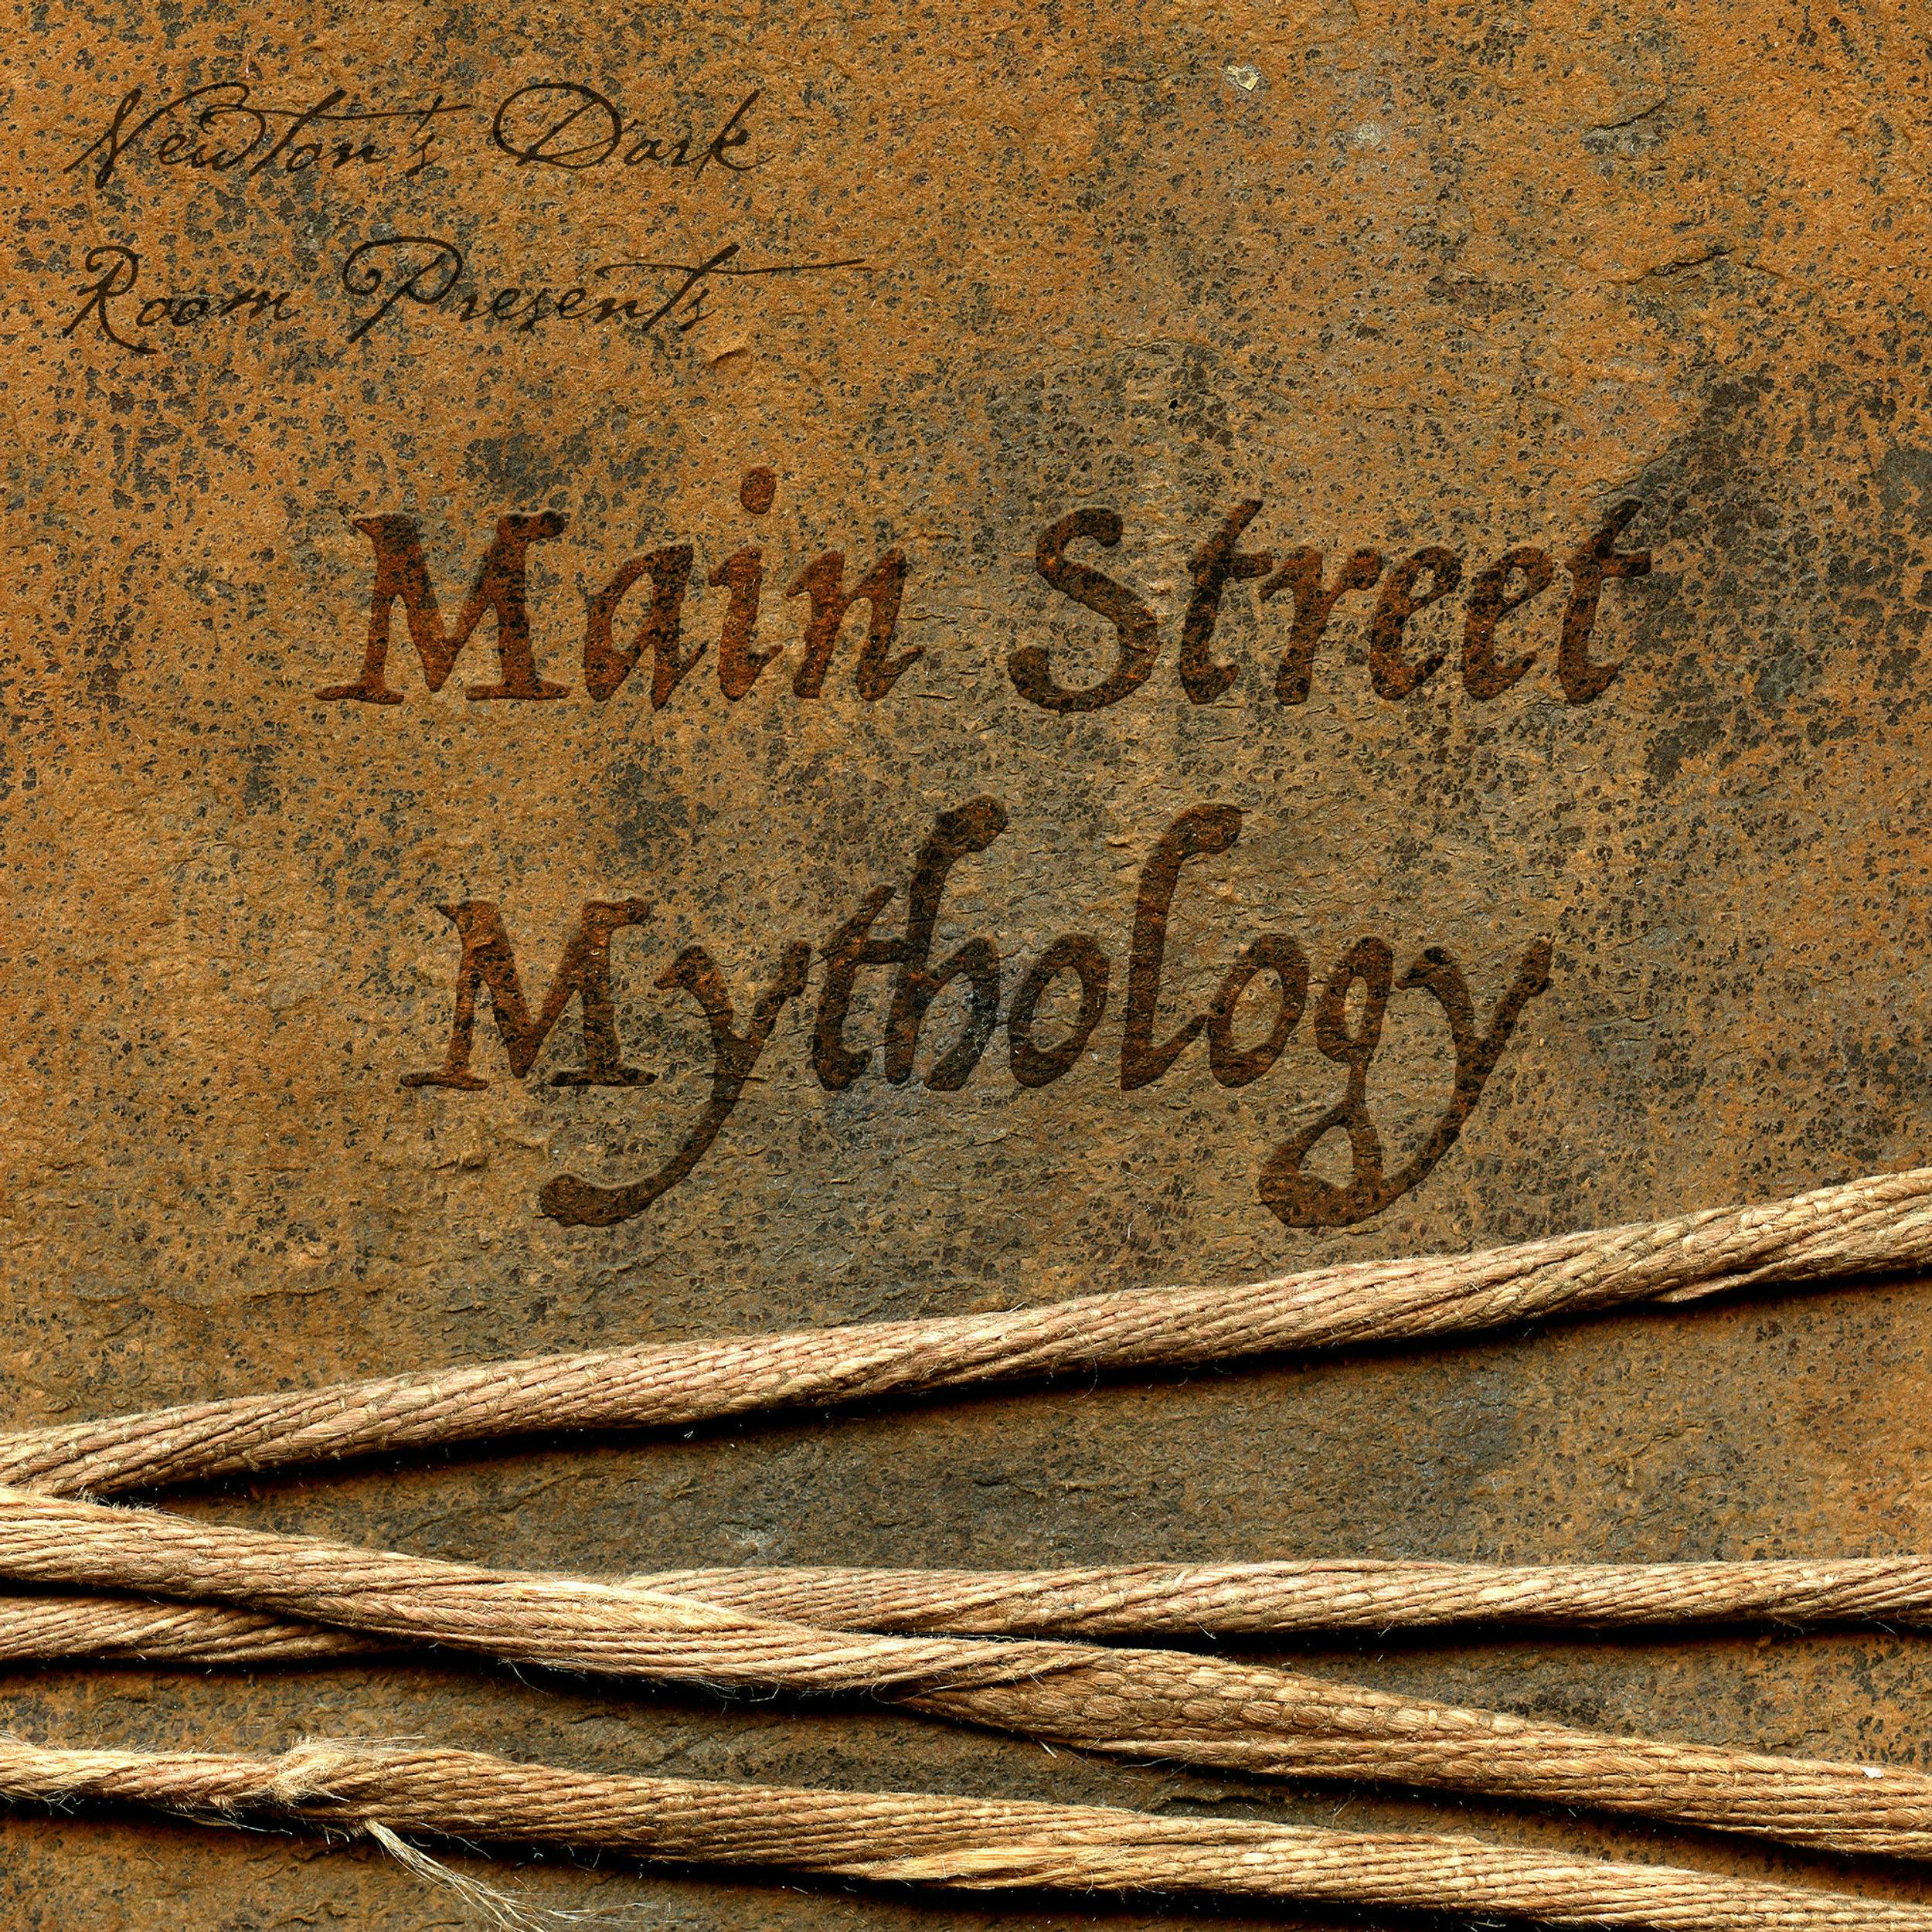 Main Street Mythology